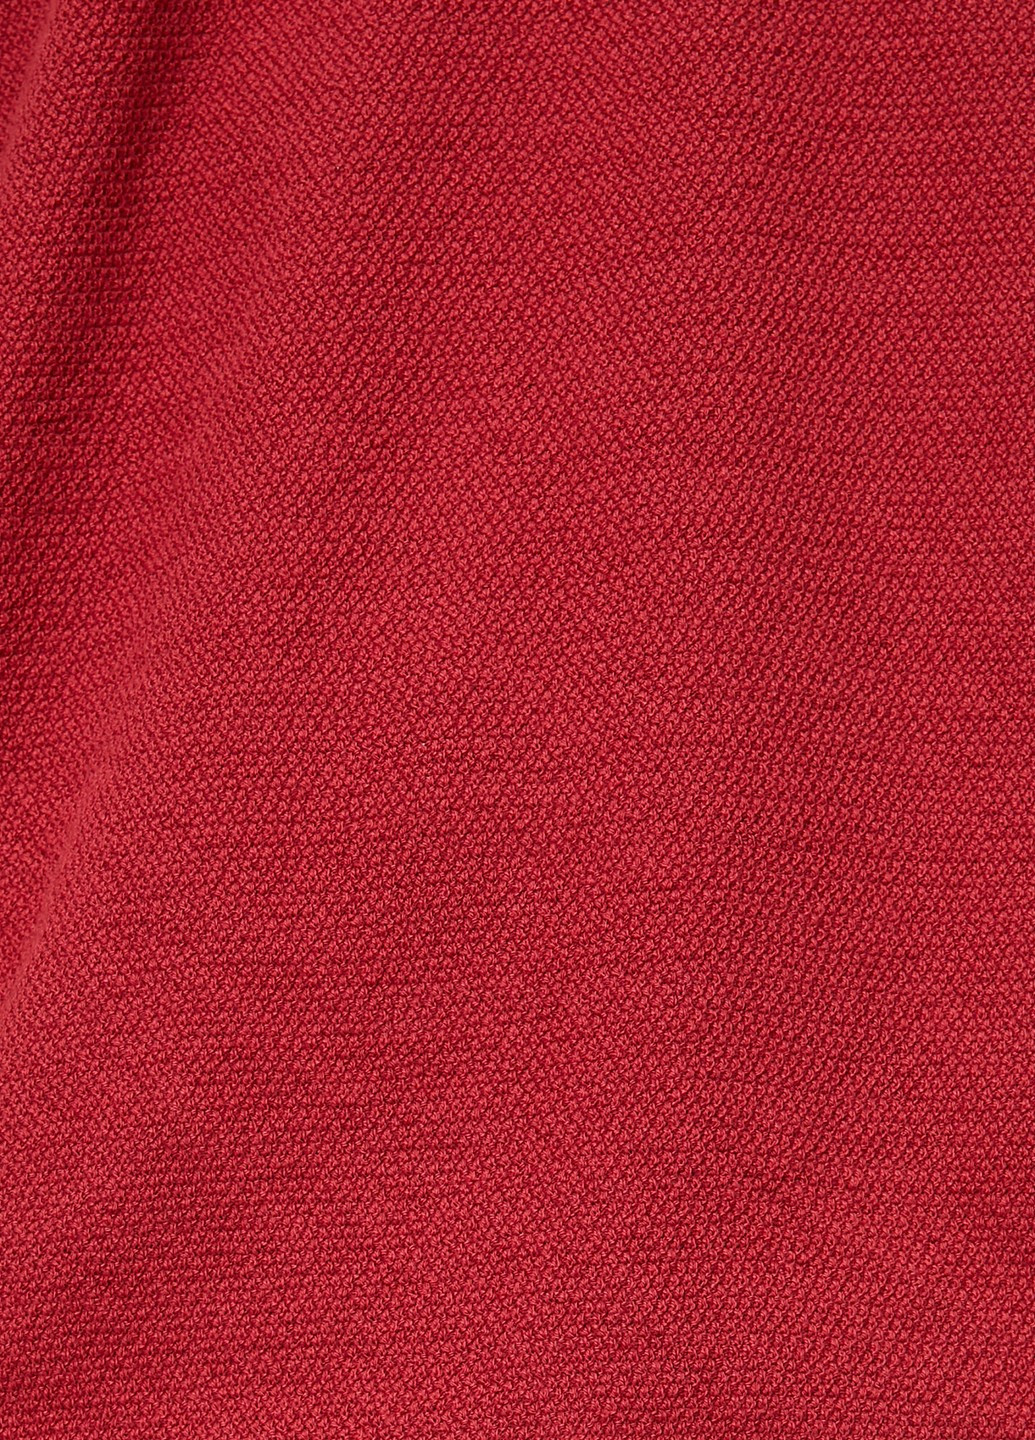 Темно-красная футболка-поло для мужчин KOTON однотонная